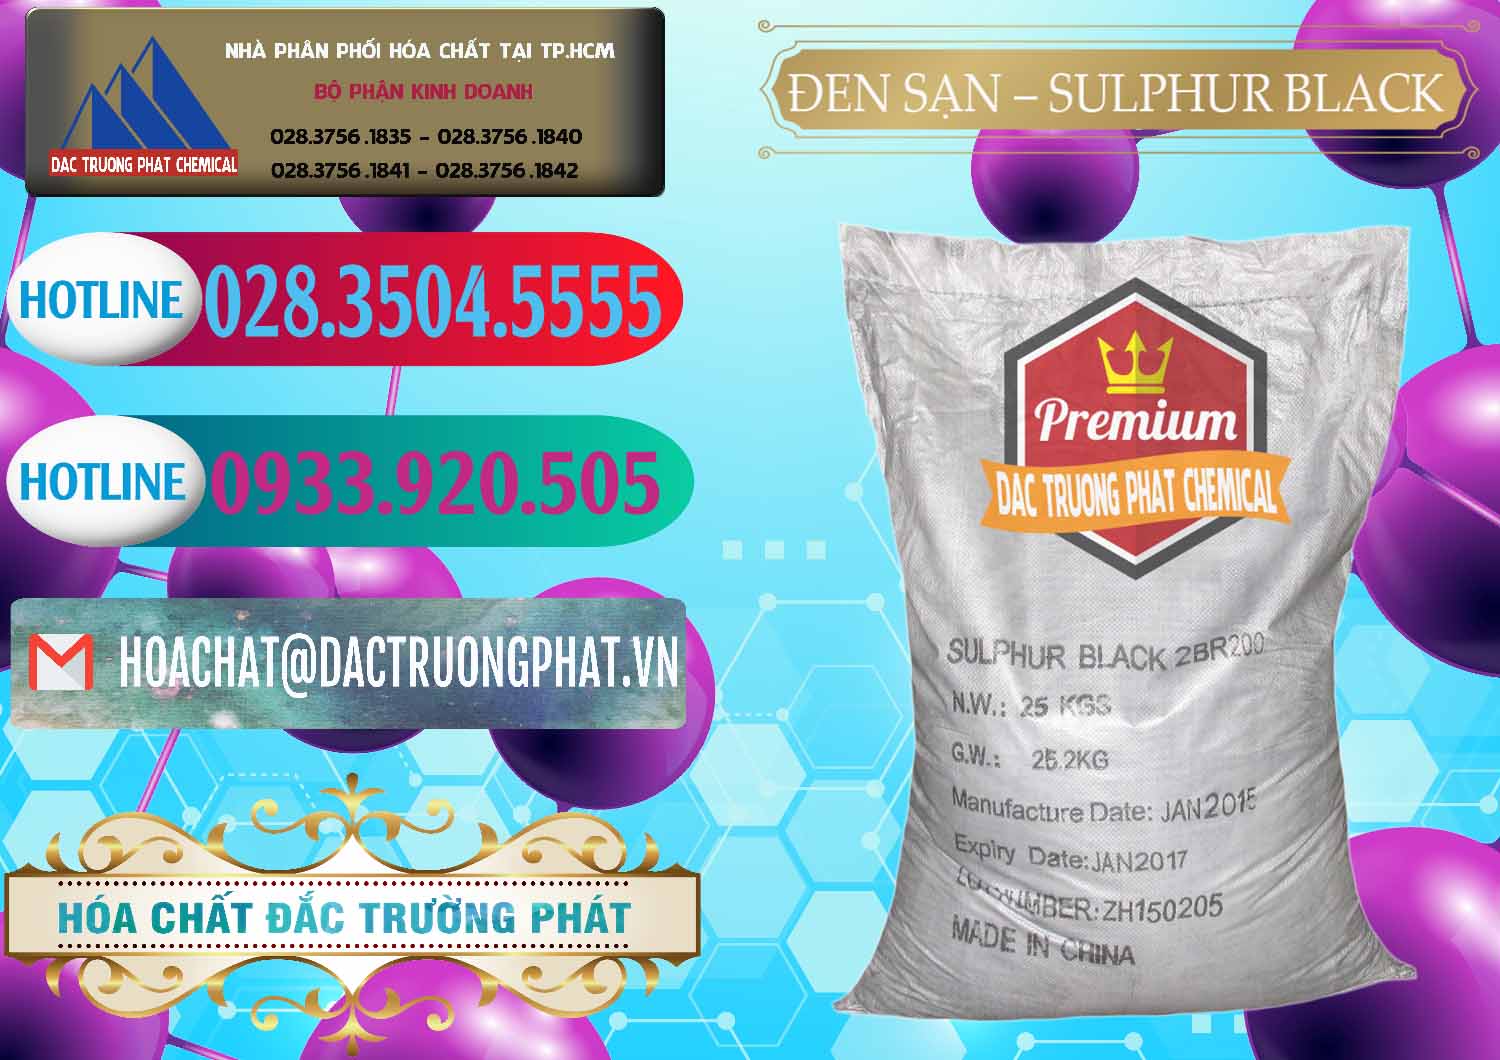 Cty bán & cung ứng Đen Sạn – Sulphur Black Trung Quốc China - 0062 - Công ty chuyên phân phối _ cung ứng hóa chất tại TP.HCM - truongphat.vn